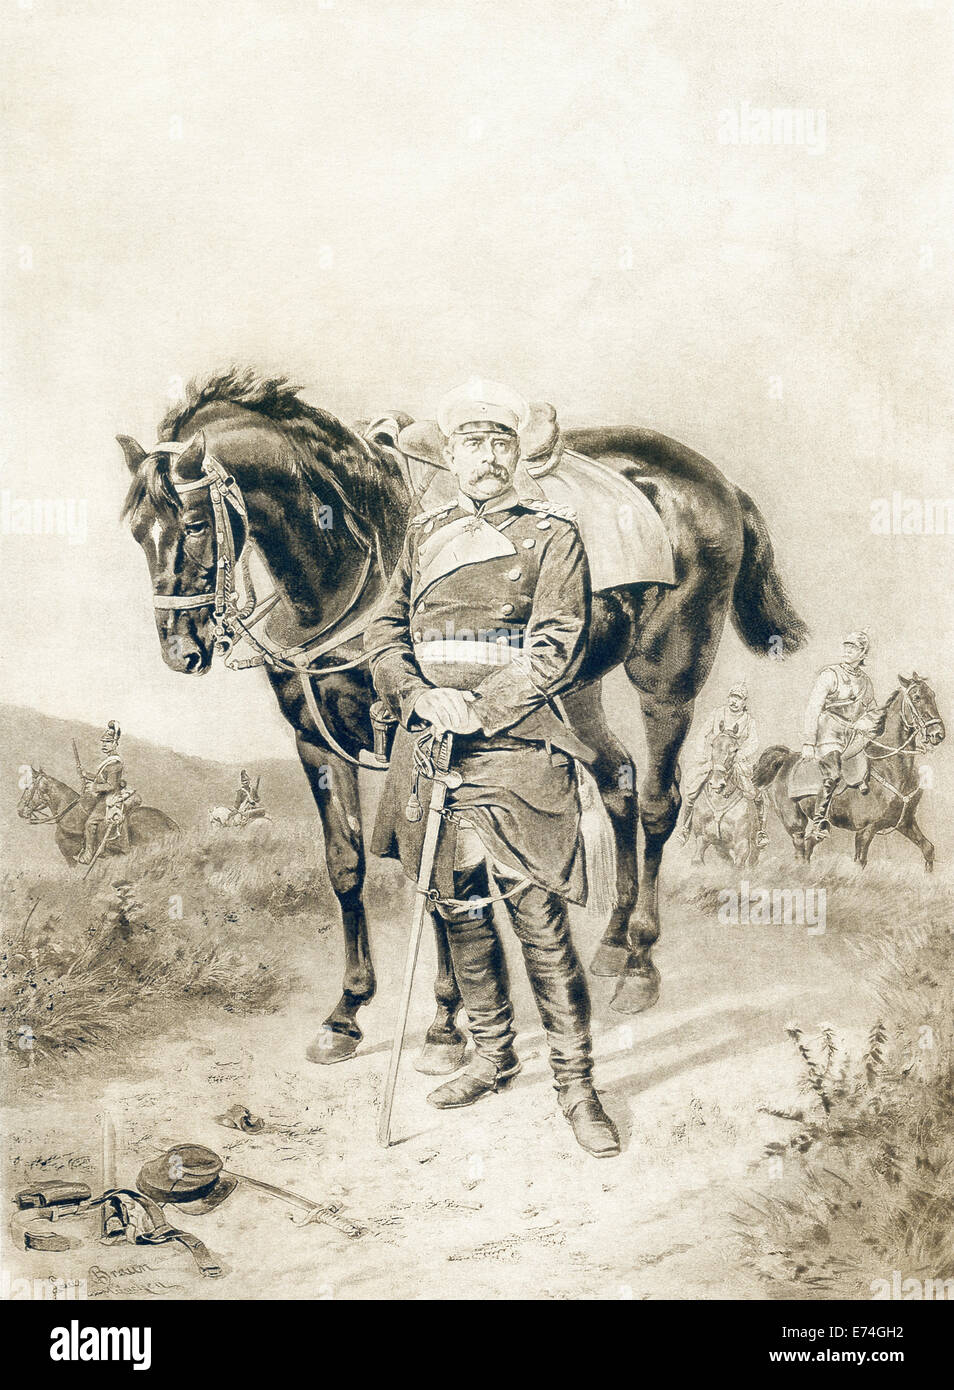 Peintre allemand Ludwig Braun montre Bismarck avec son cheval à la périphérie de Paris dans la guerre franco-prussienne de 1870-1871. Banque D'Images